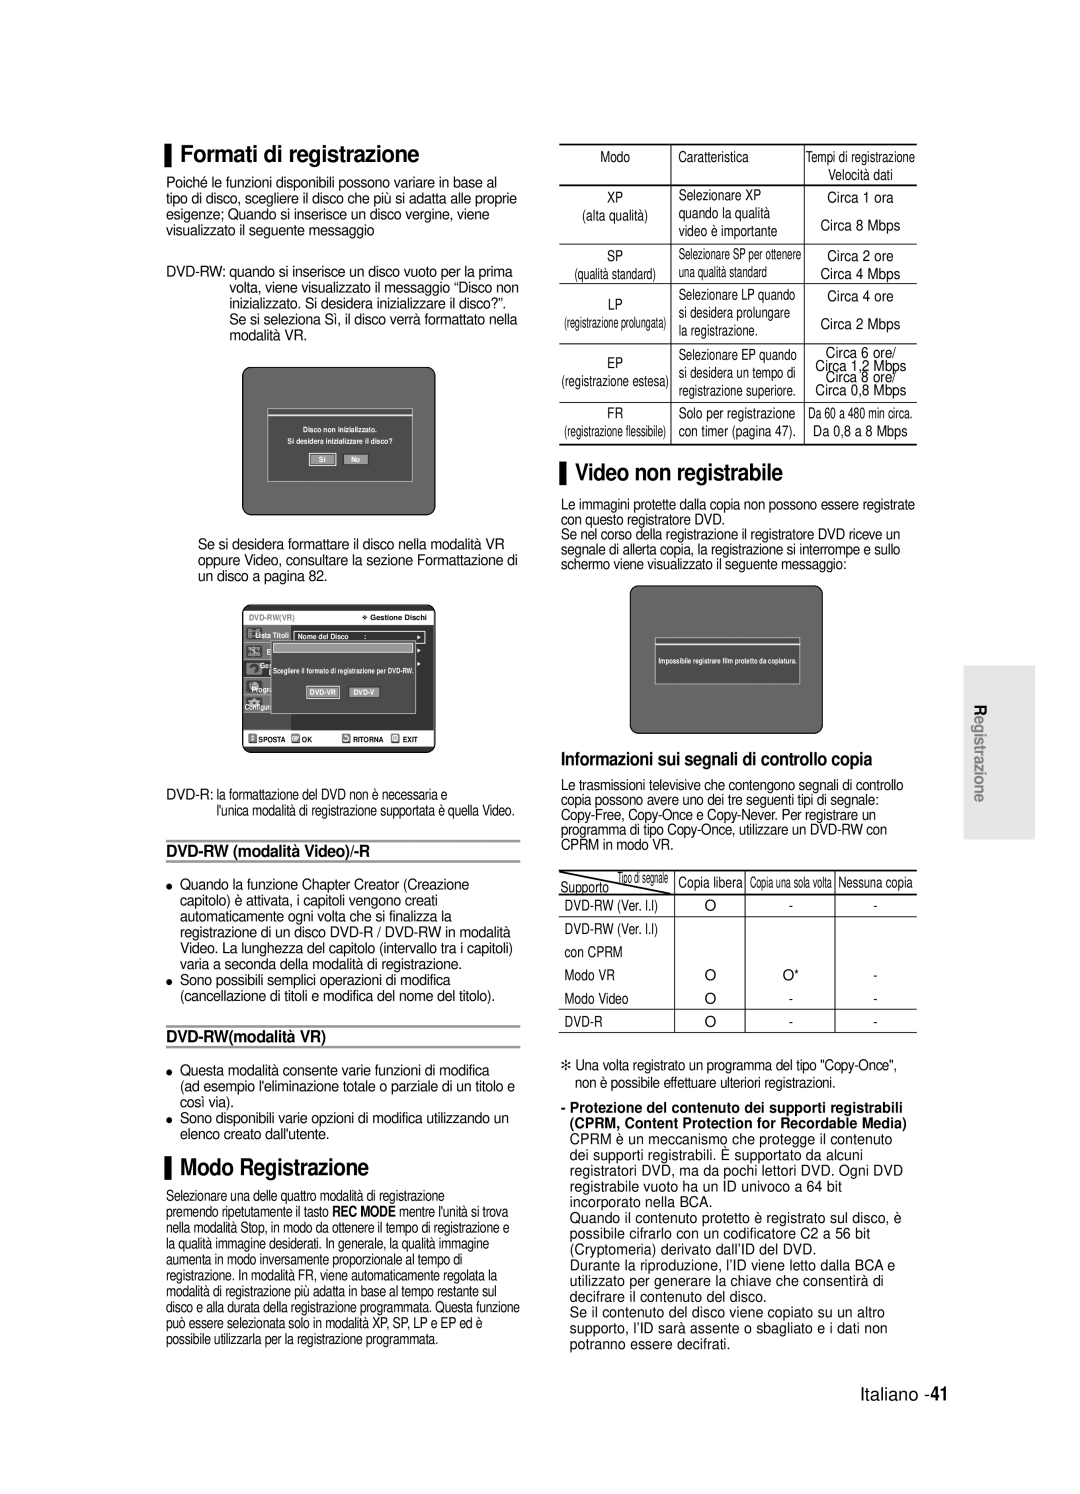 Samsung DVD-R120/AFS manual Formati di registrazione, Video non registrabile, Modo Registrazione, DVD-RW modalità Video/-R 